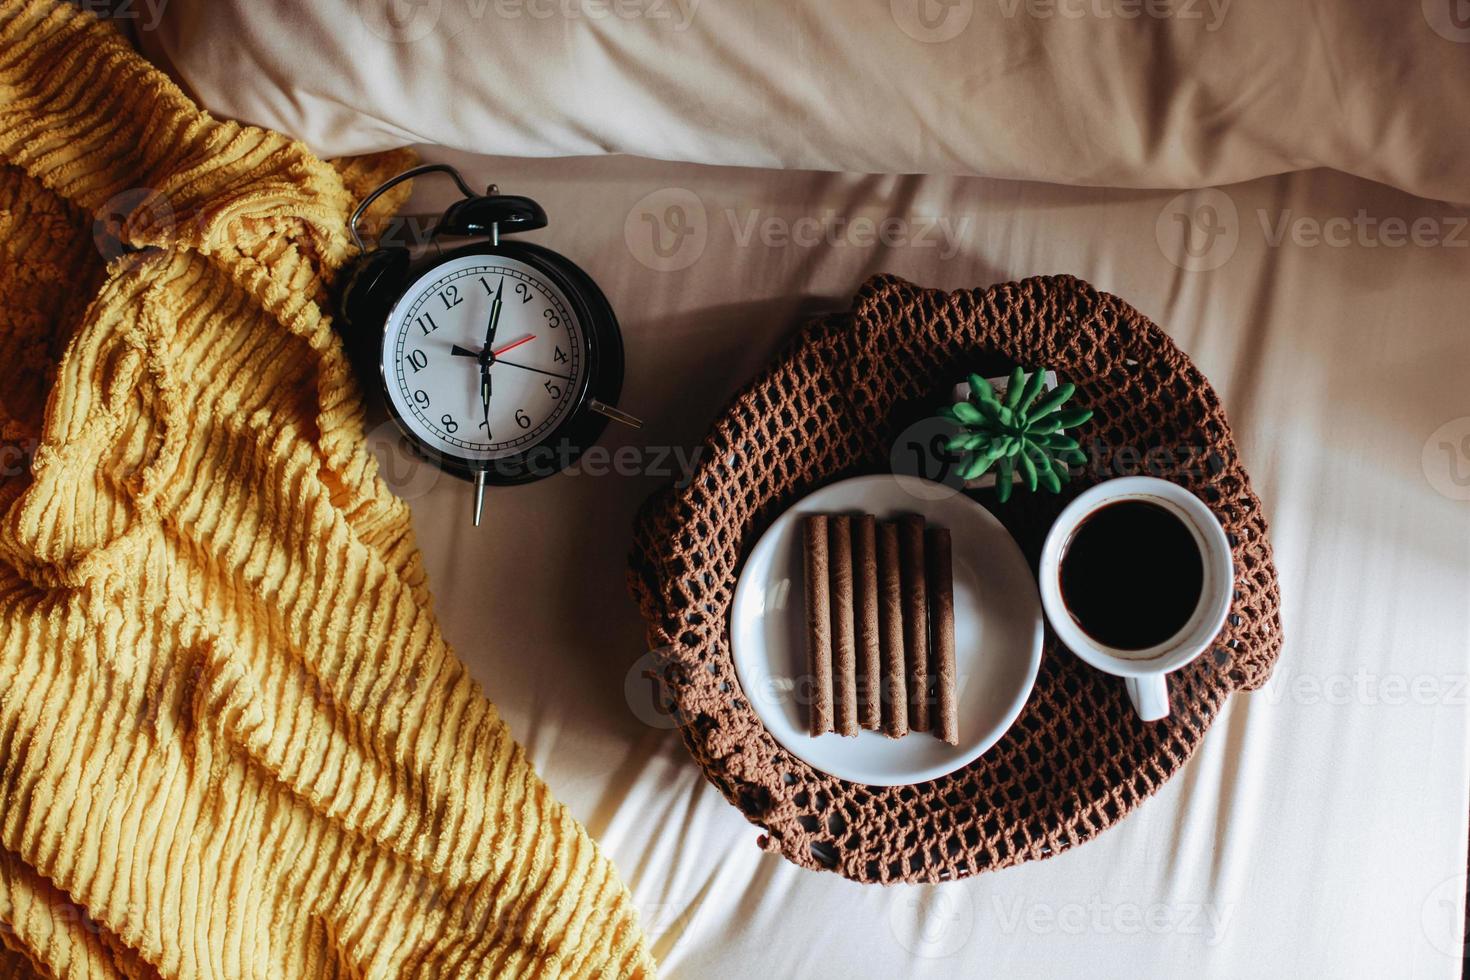 vista superior de la merienda y una taza de café para el desayuno con suculentas y reloj que muestra las 7 en punto en la cama foto